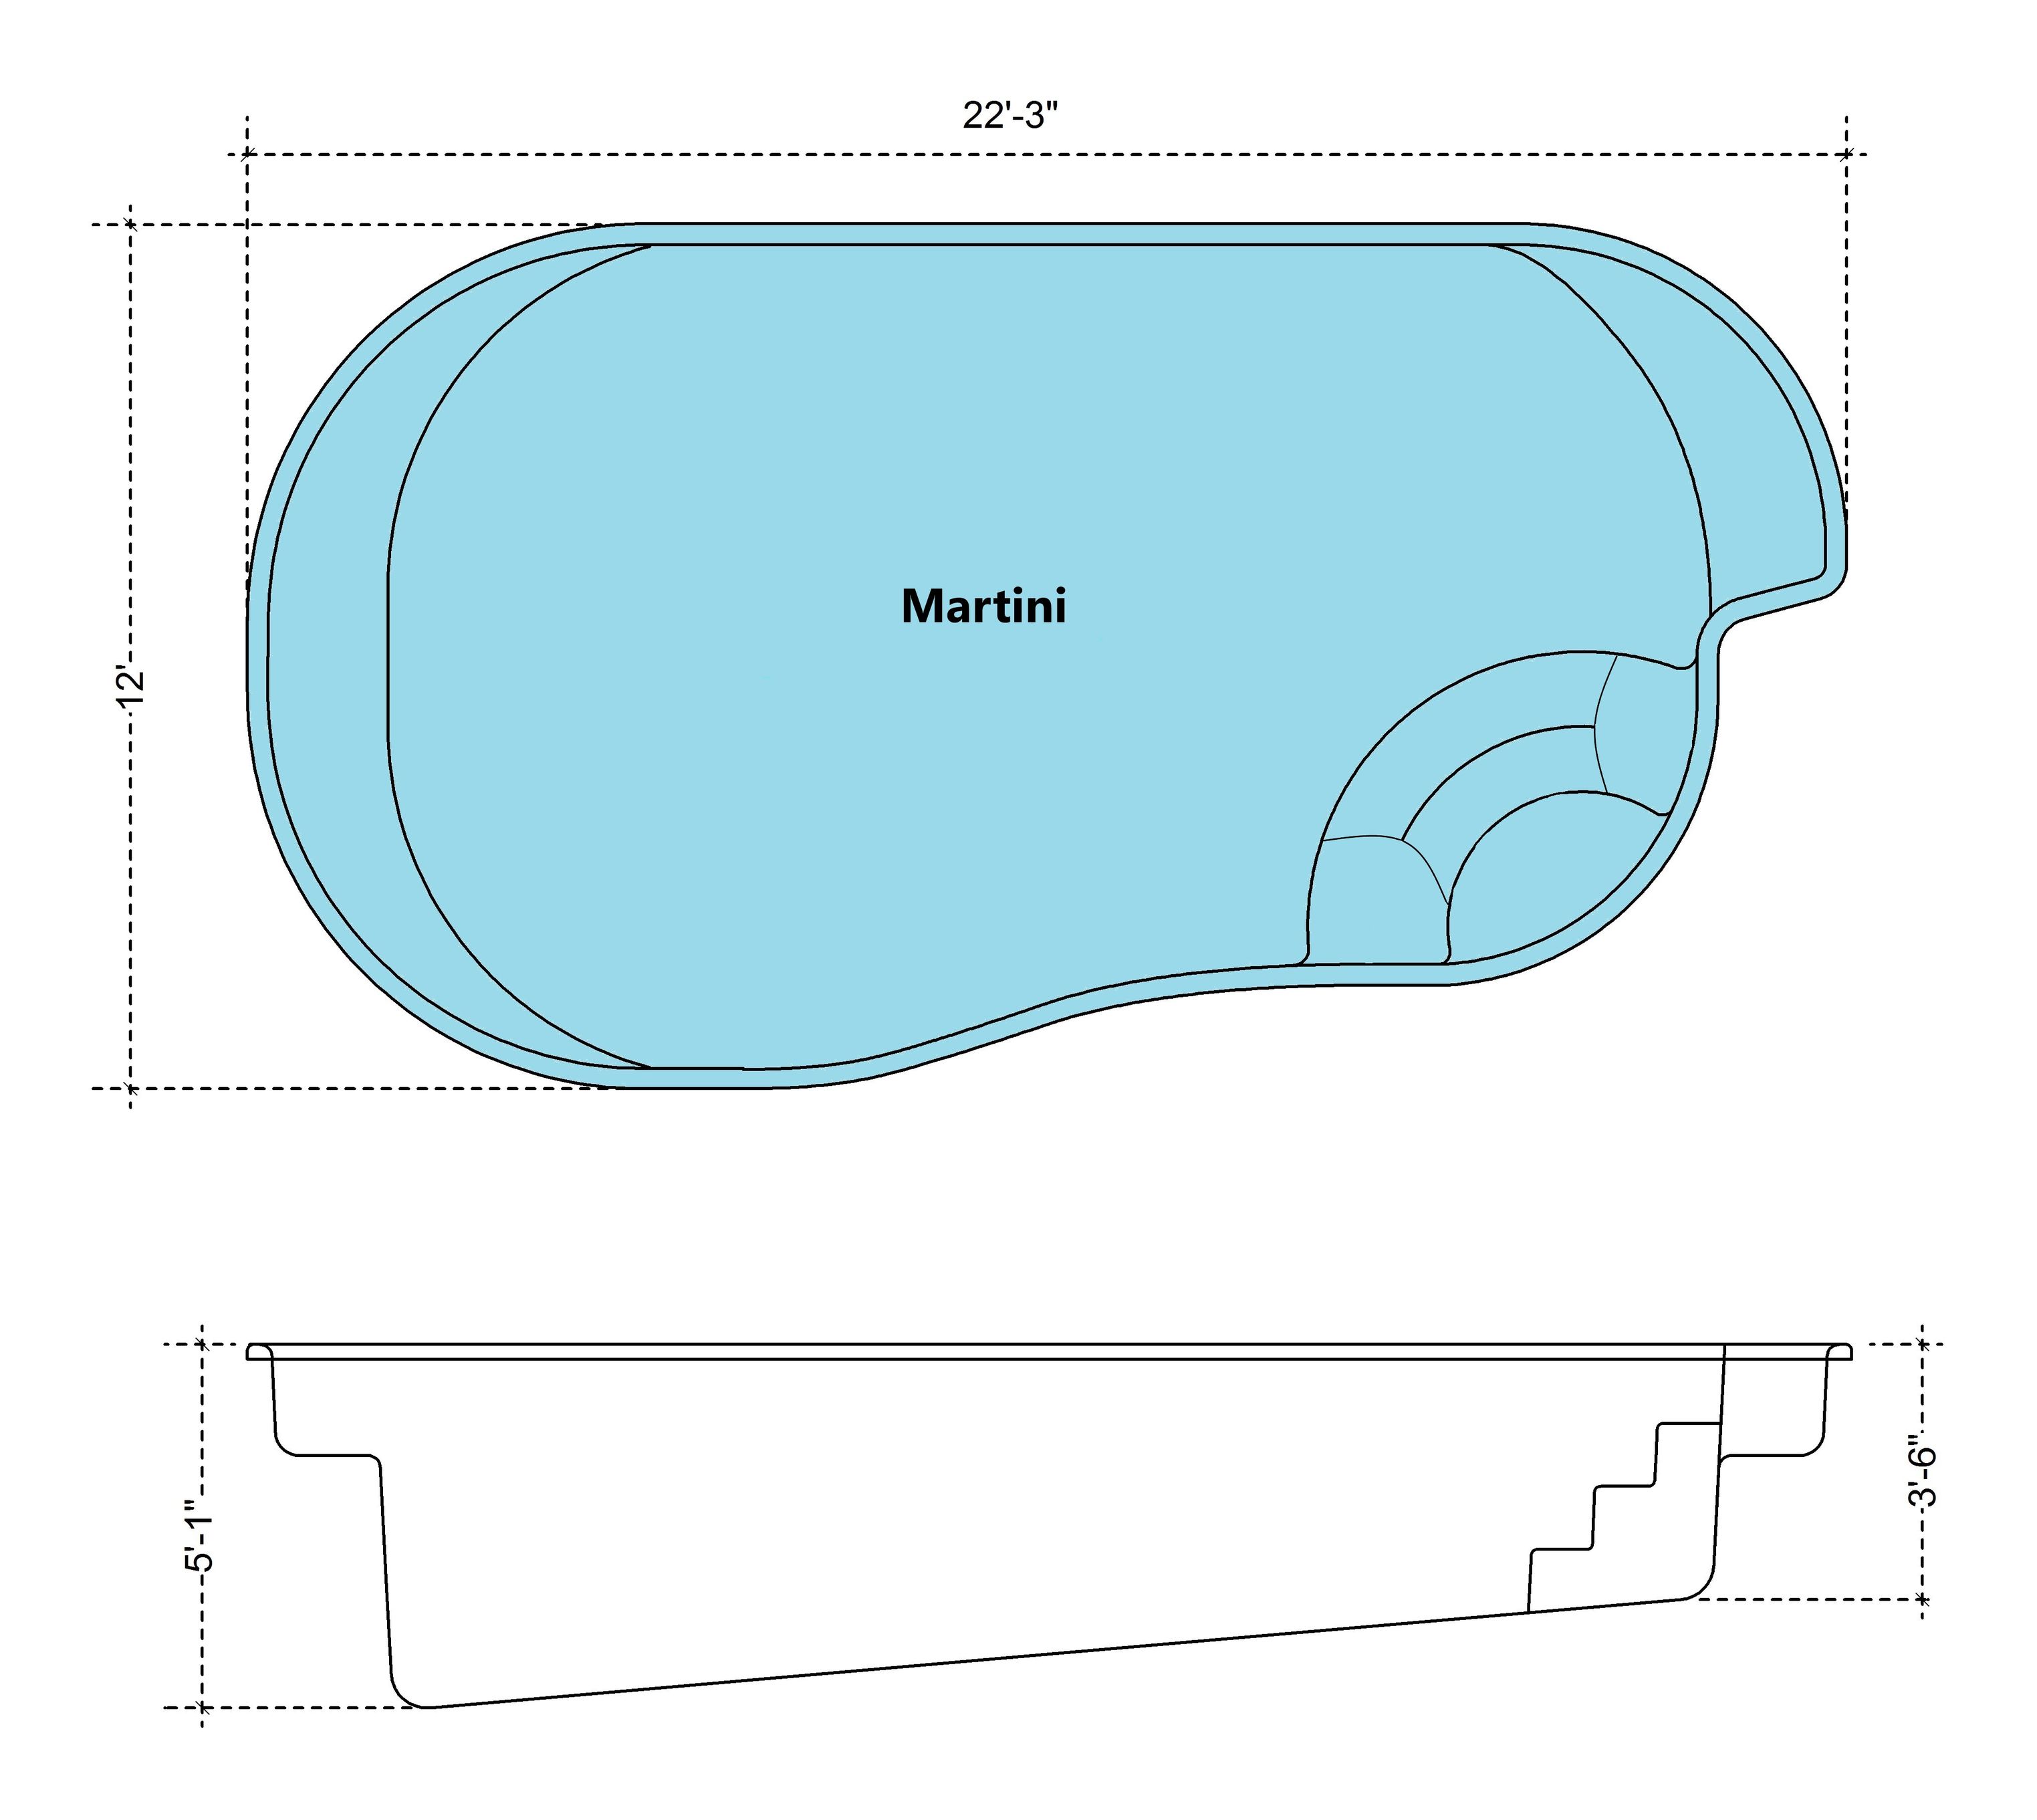 Martini Fiberglass Pool Diagram